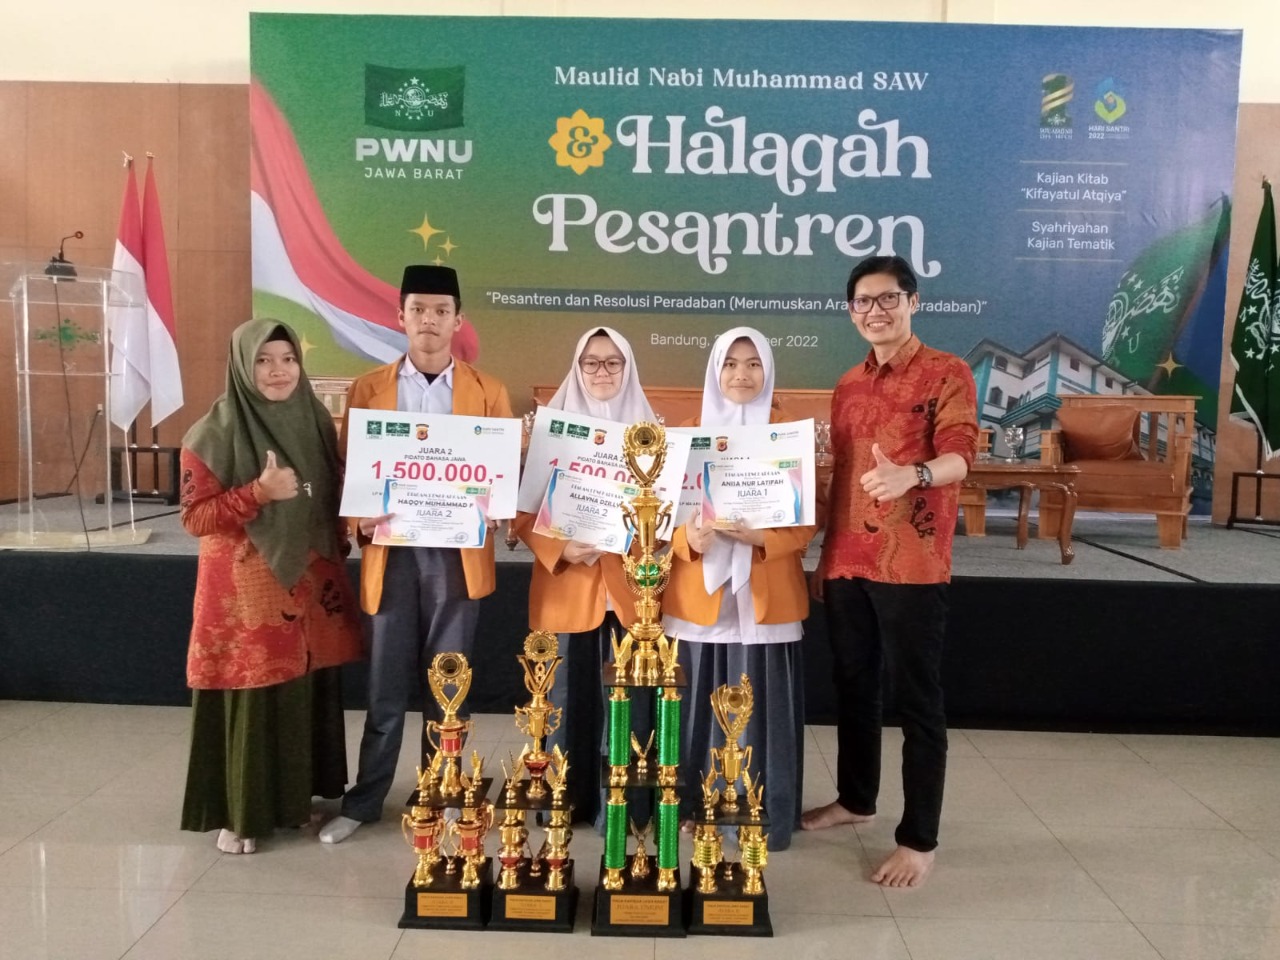 Siswa siswi MAN 1 Kota Sukabumi berhasil meraih kejuaraan dalam lomba Pidato Lima Bahasa